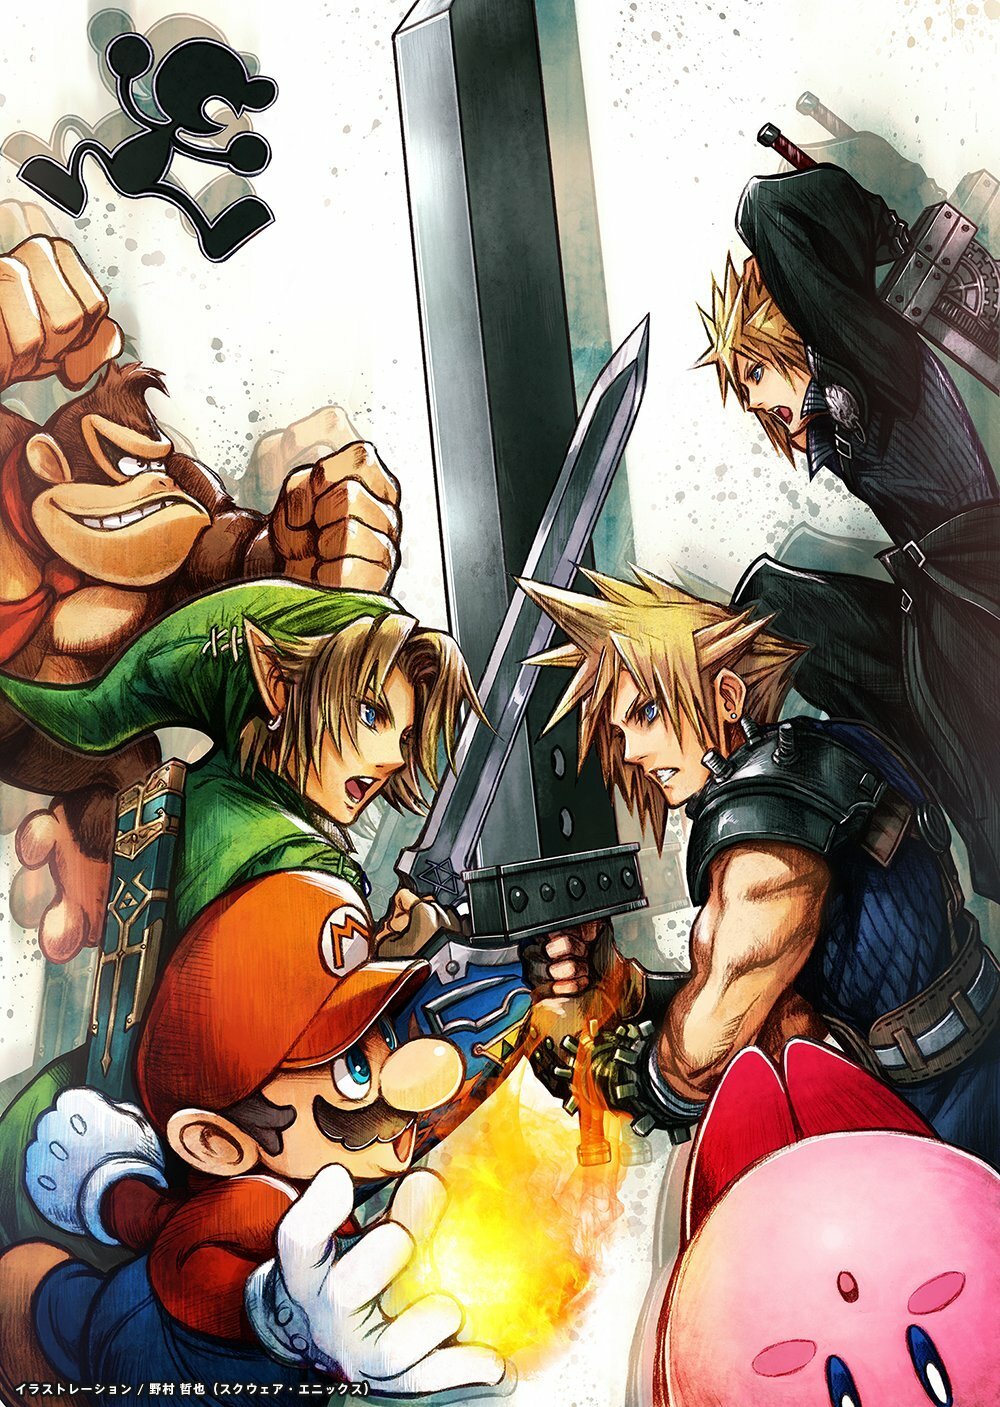 L'illustrazione di Tetsuya Nomura che omaggia l'arrivo di Cloud in Smash Bros